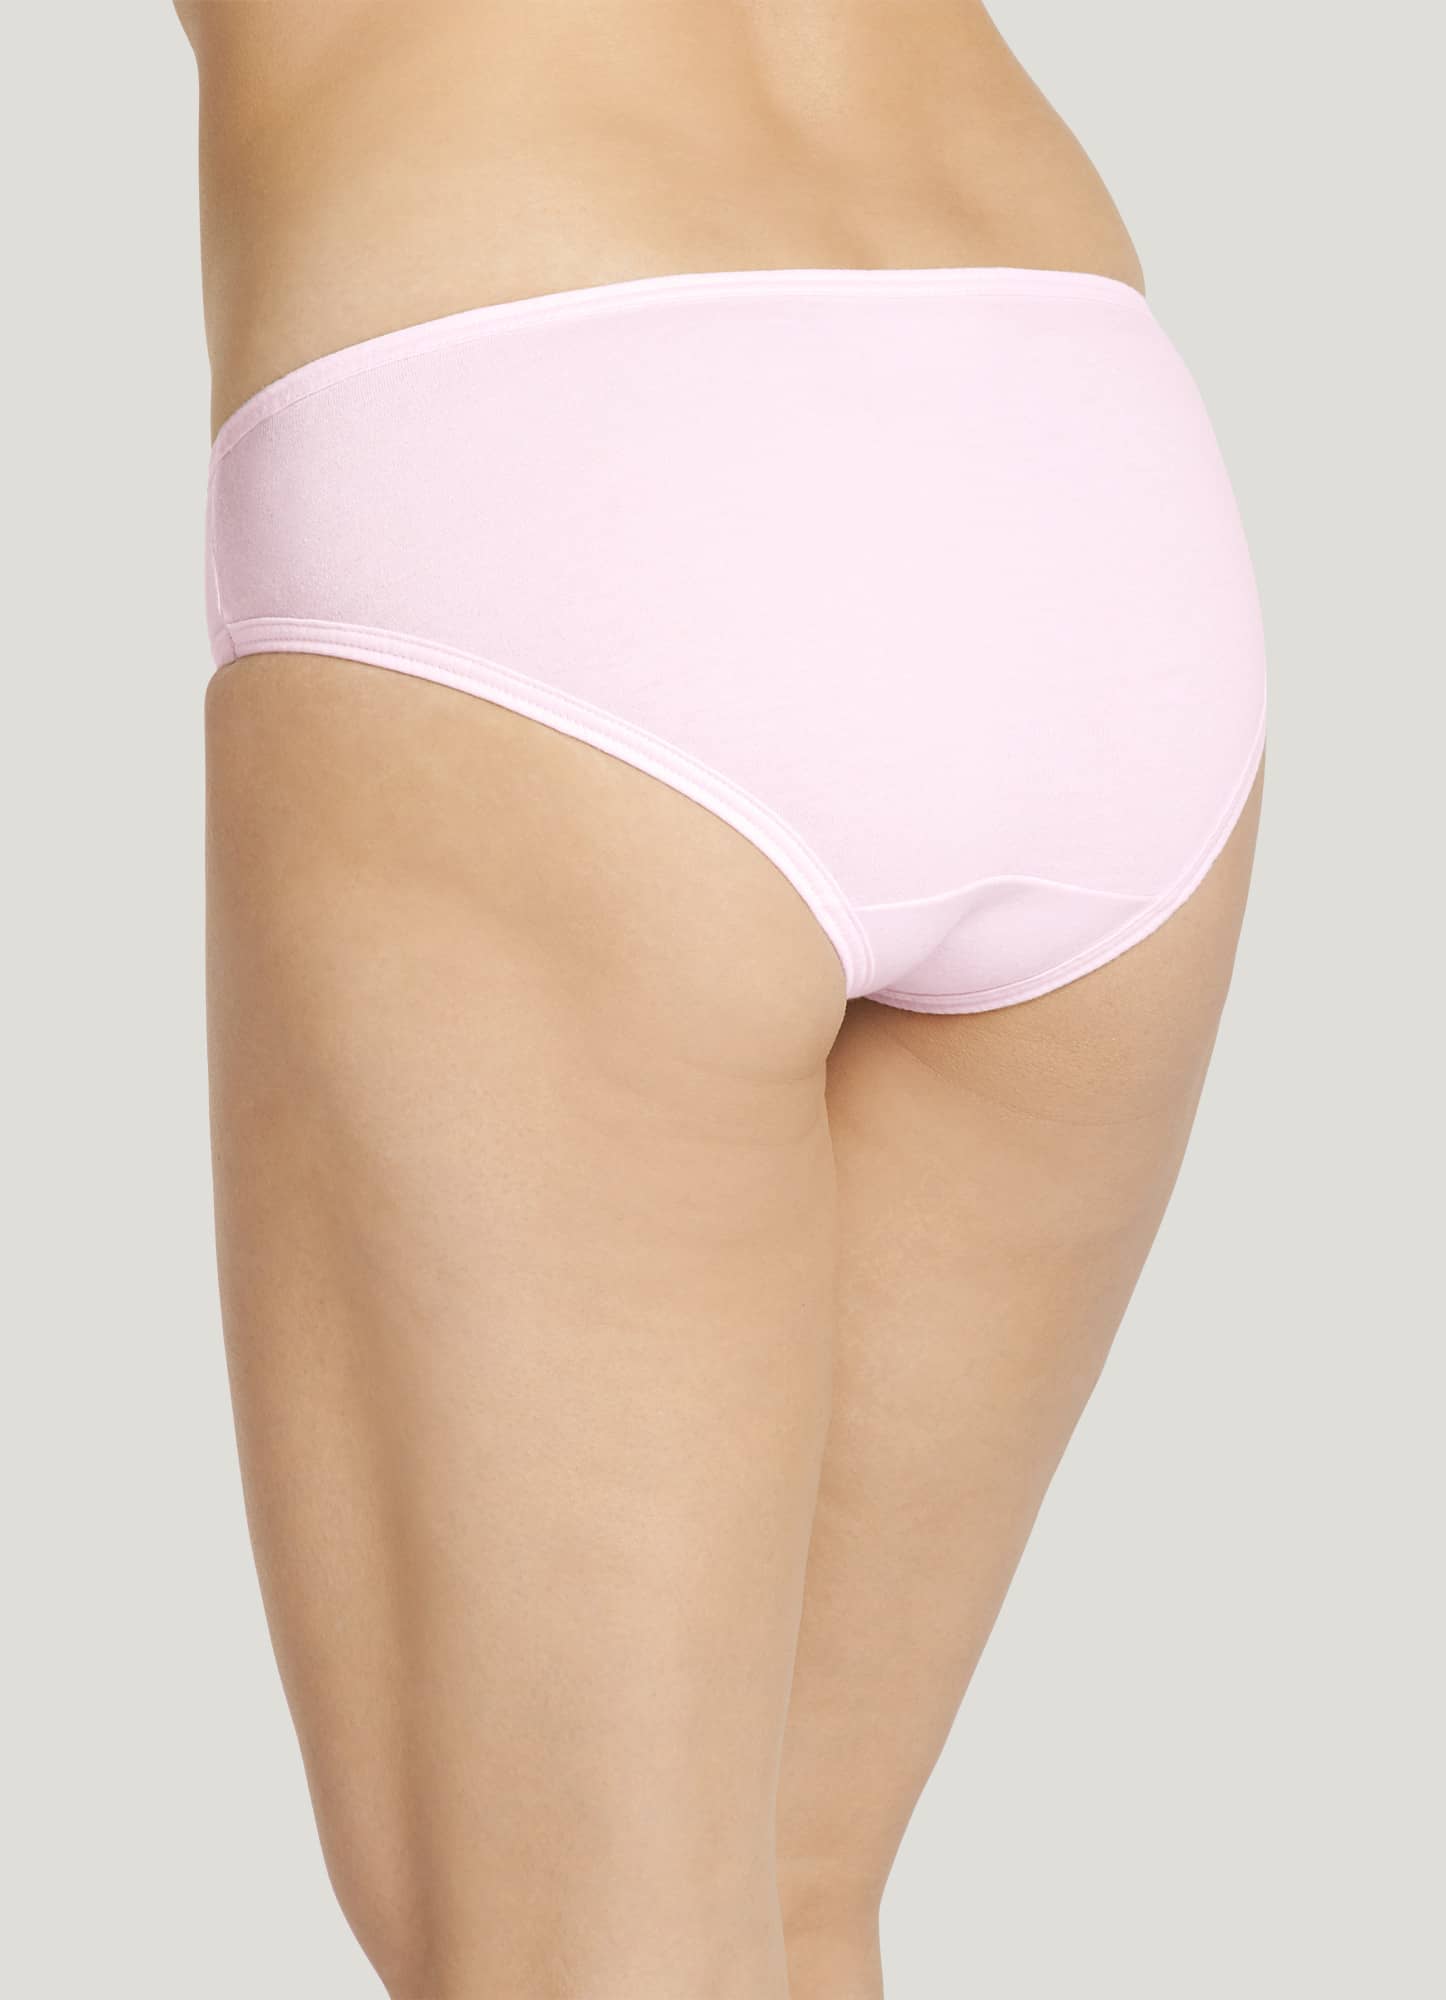 Jockey Women's Underwear Cheeky Modal Bikini, chevron/pink